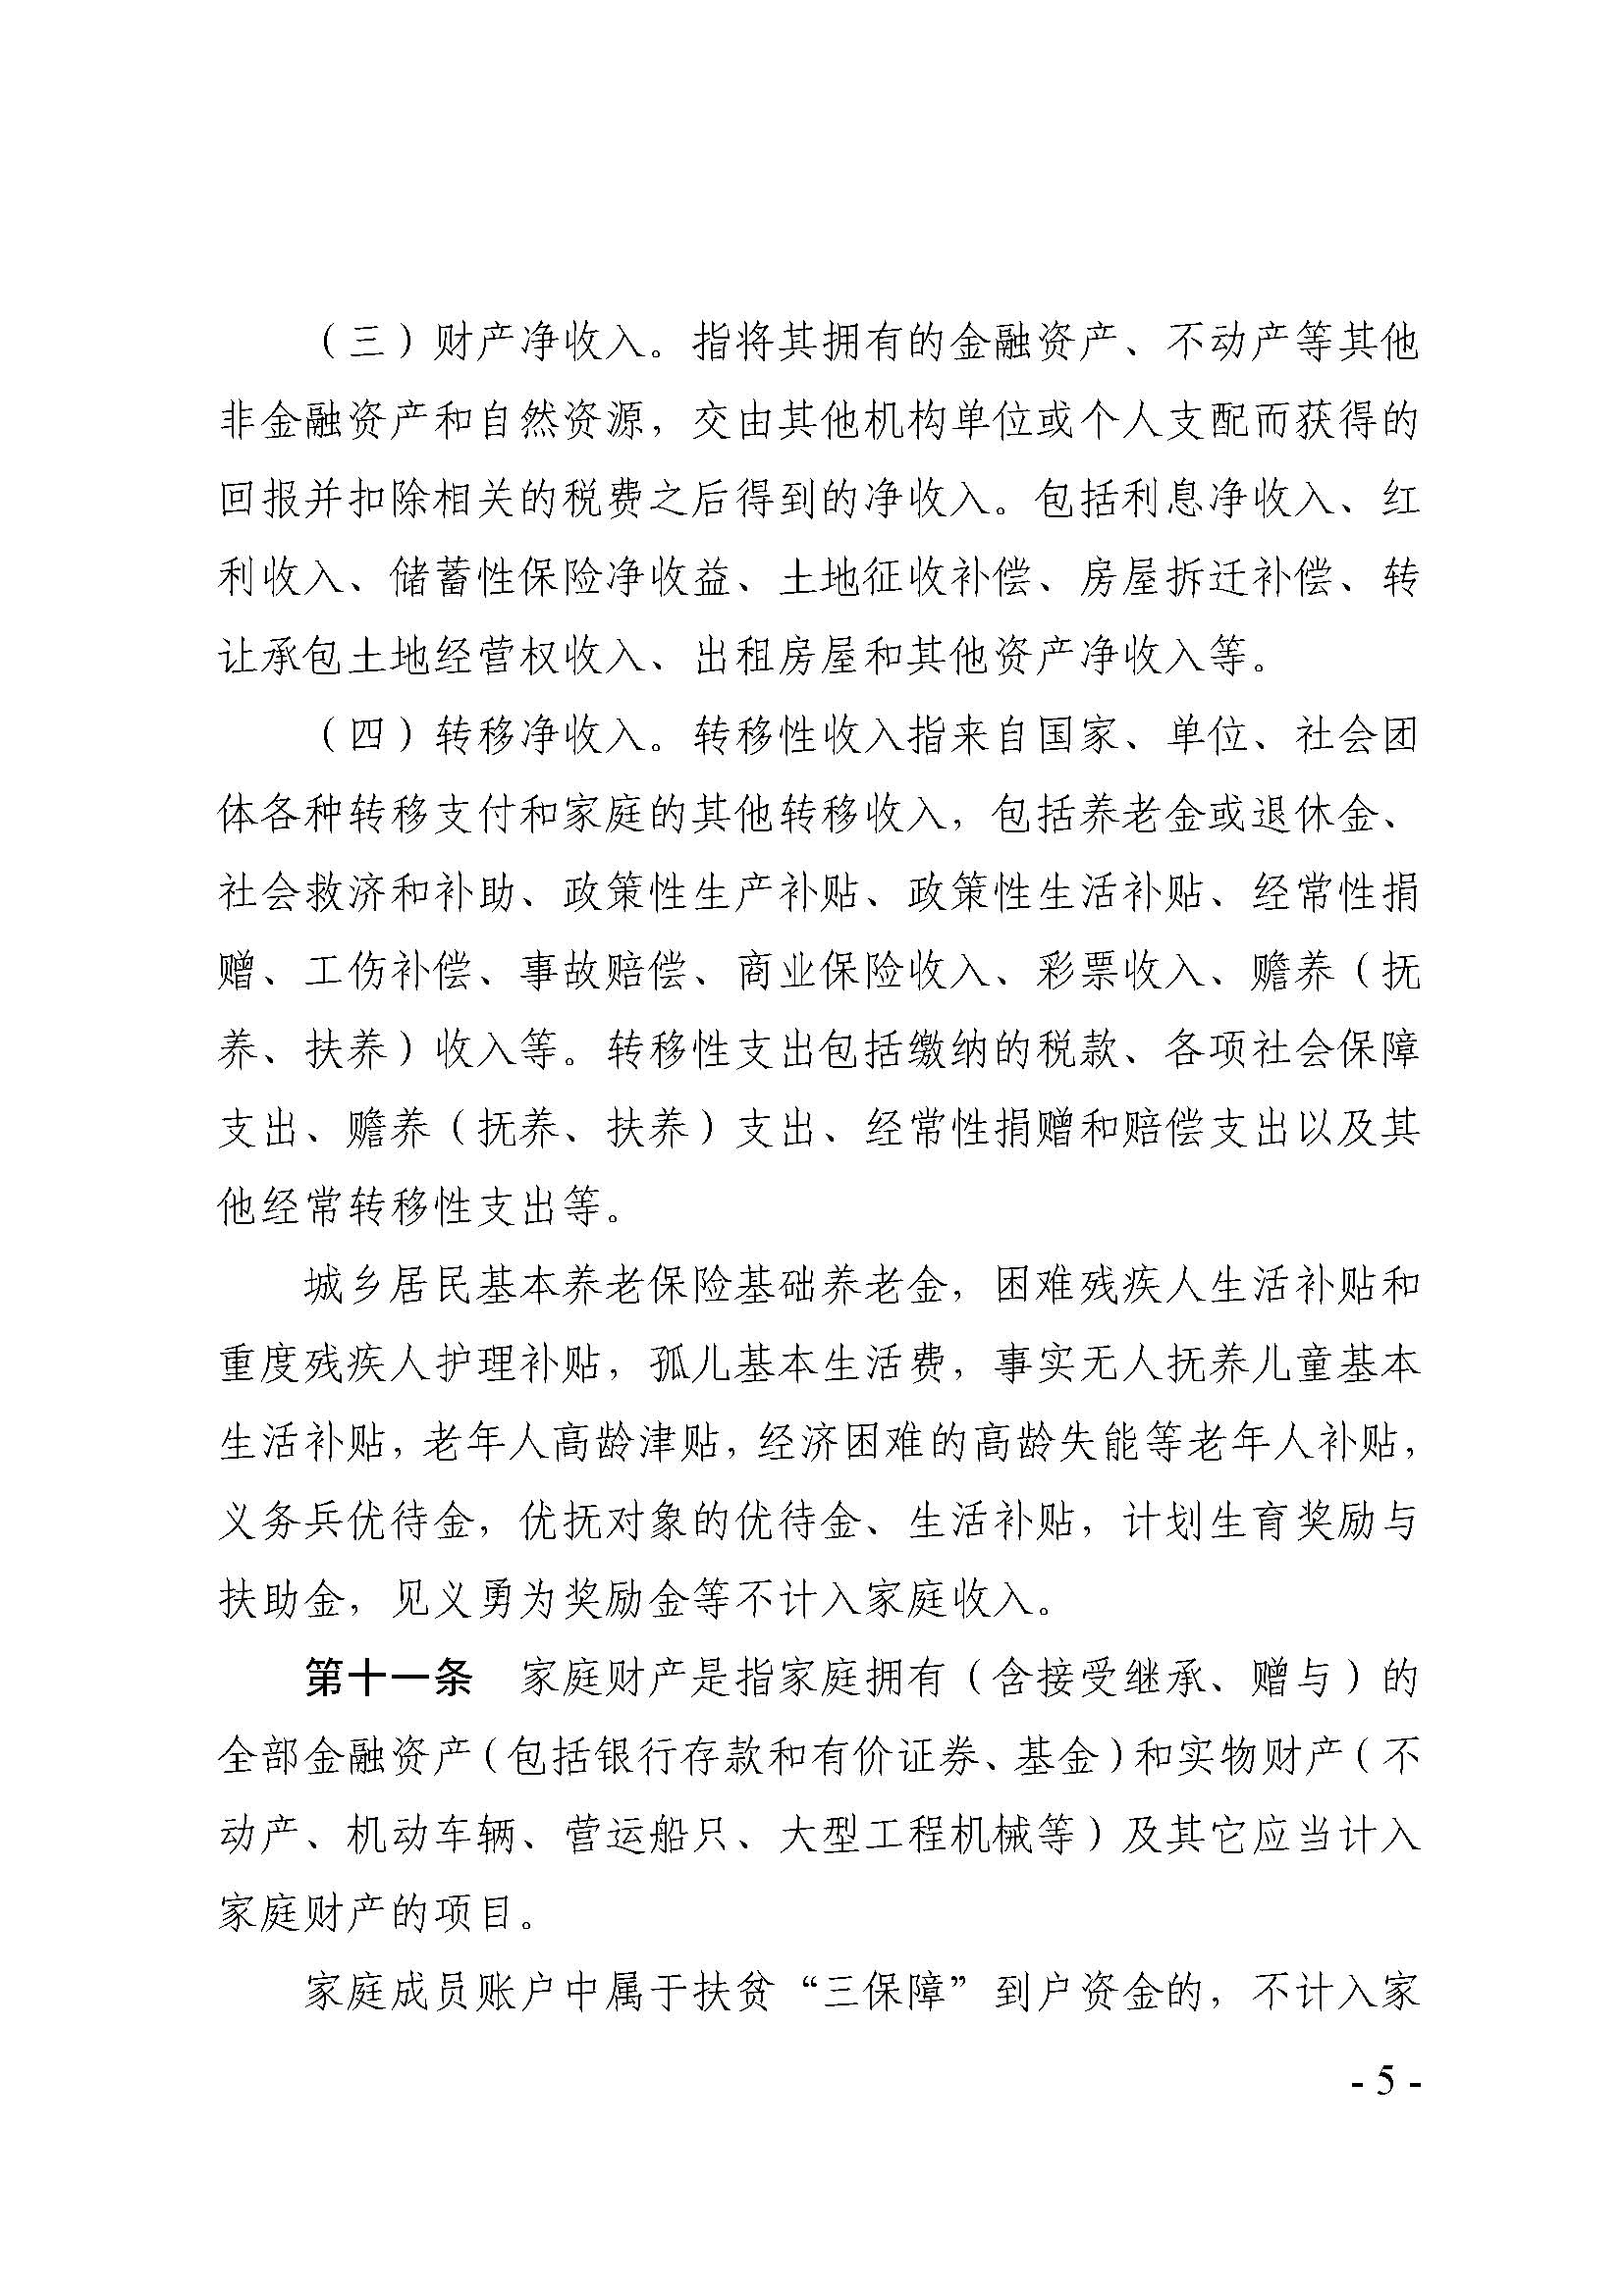 广东省最低生活保障家庭经济状况核对和生活状况评估认定办法_页面_05.jpg